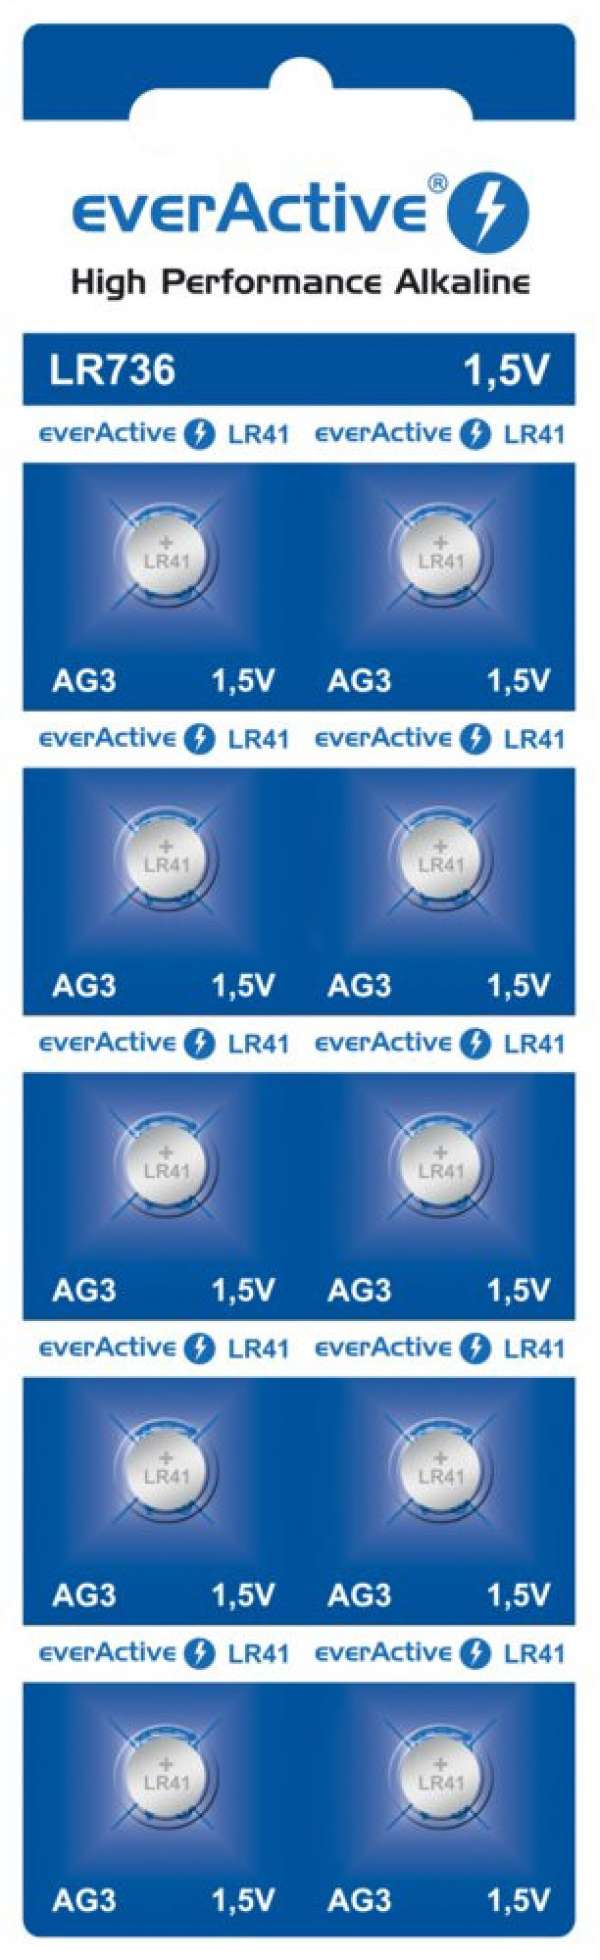 Bateria everActive Alkaline G3 LR736 buborékcsomagolás 10szt.